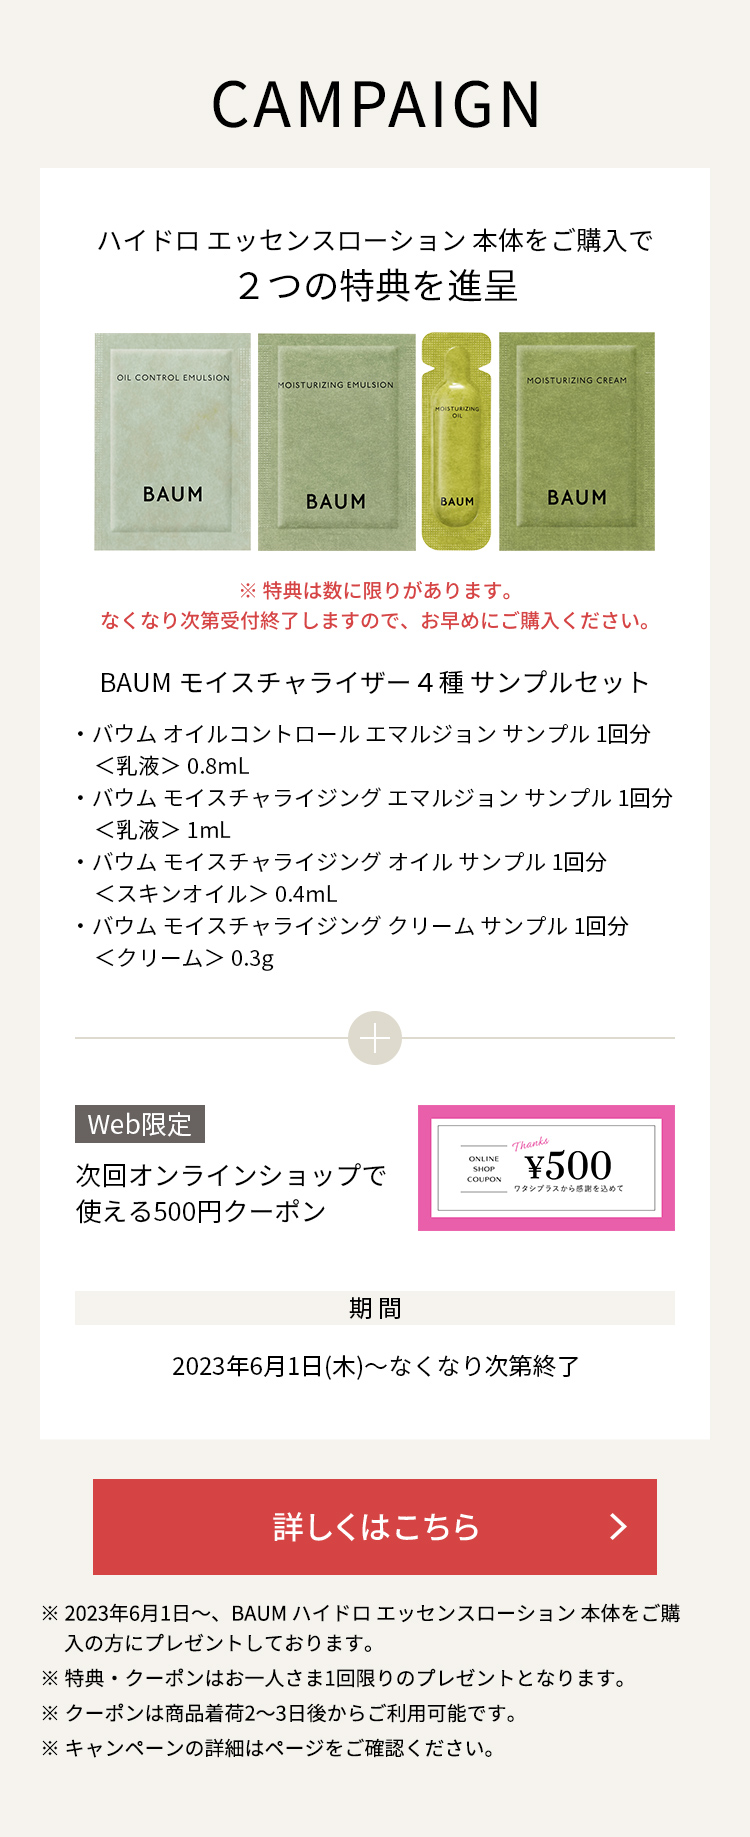 BAUM ハイドロエッセンスローション本体をご購入でモイスチャライザー4種サンプルとオンラインショップで使える500円クーポンを進呈いたします。